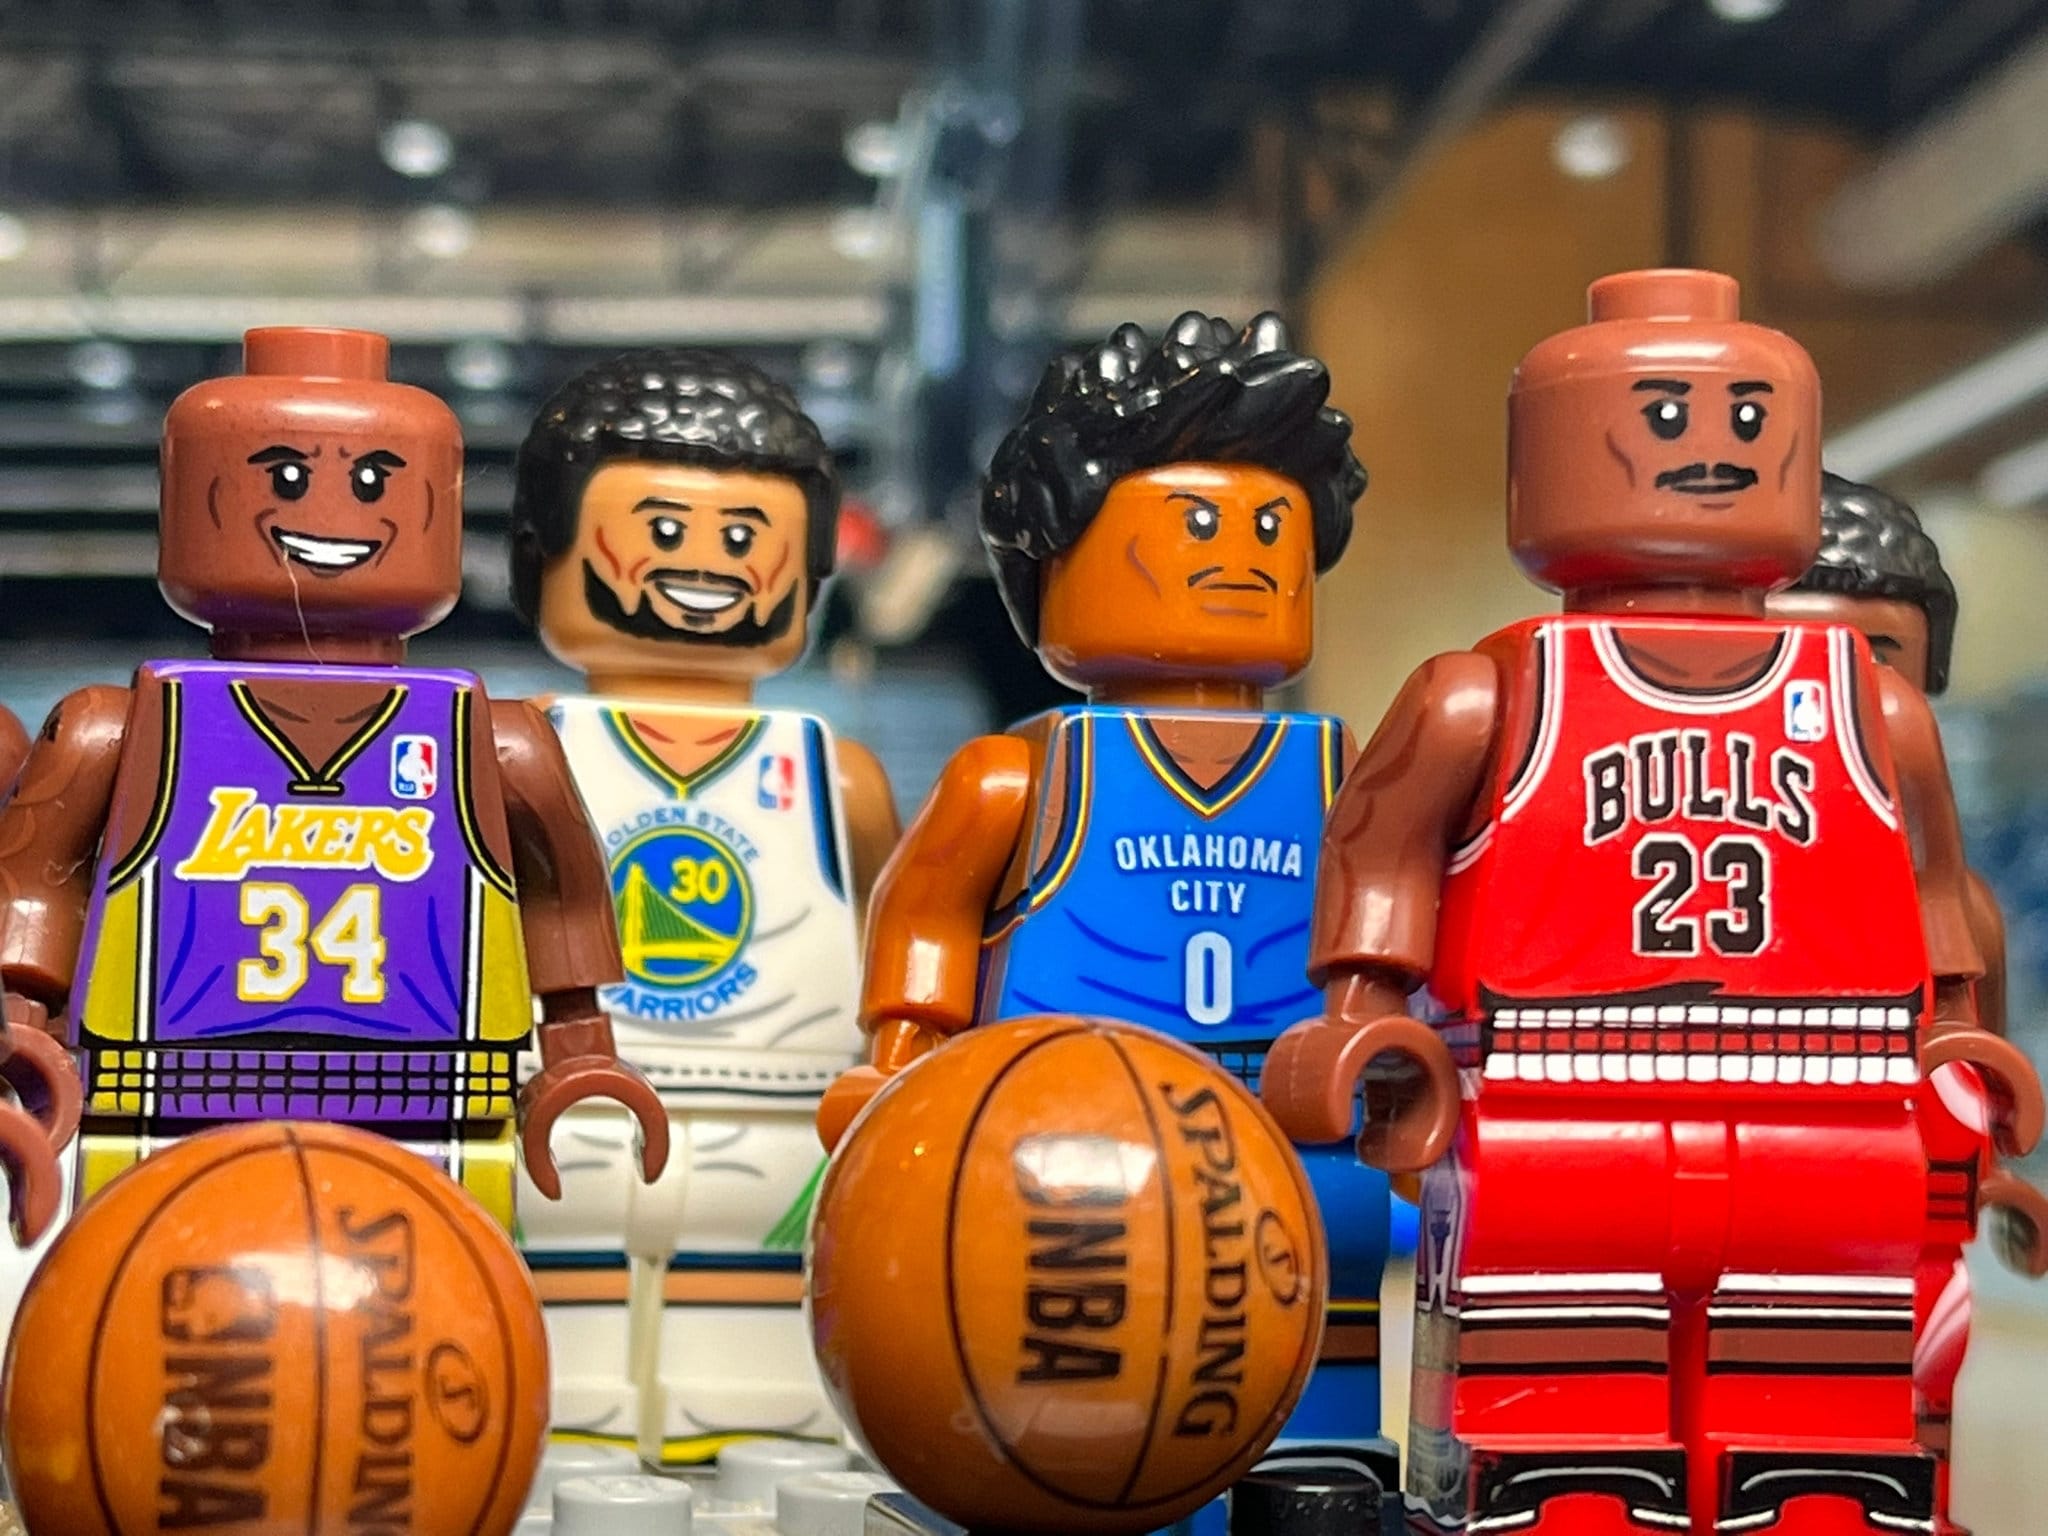 LEGO Sports: Basketball - NBA - Mini Figure - CHOOSE YOUR MINI FIG !!